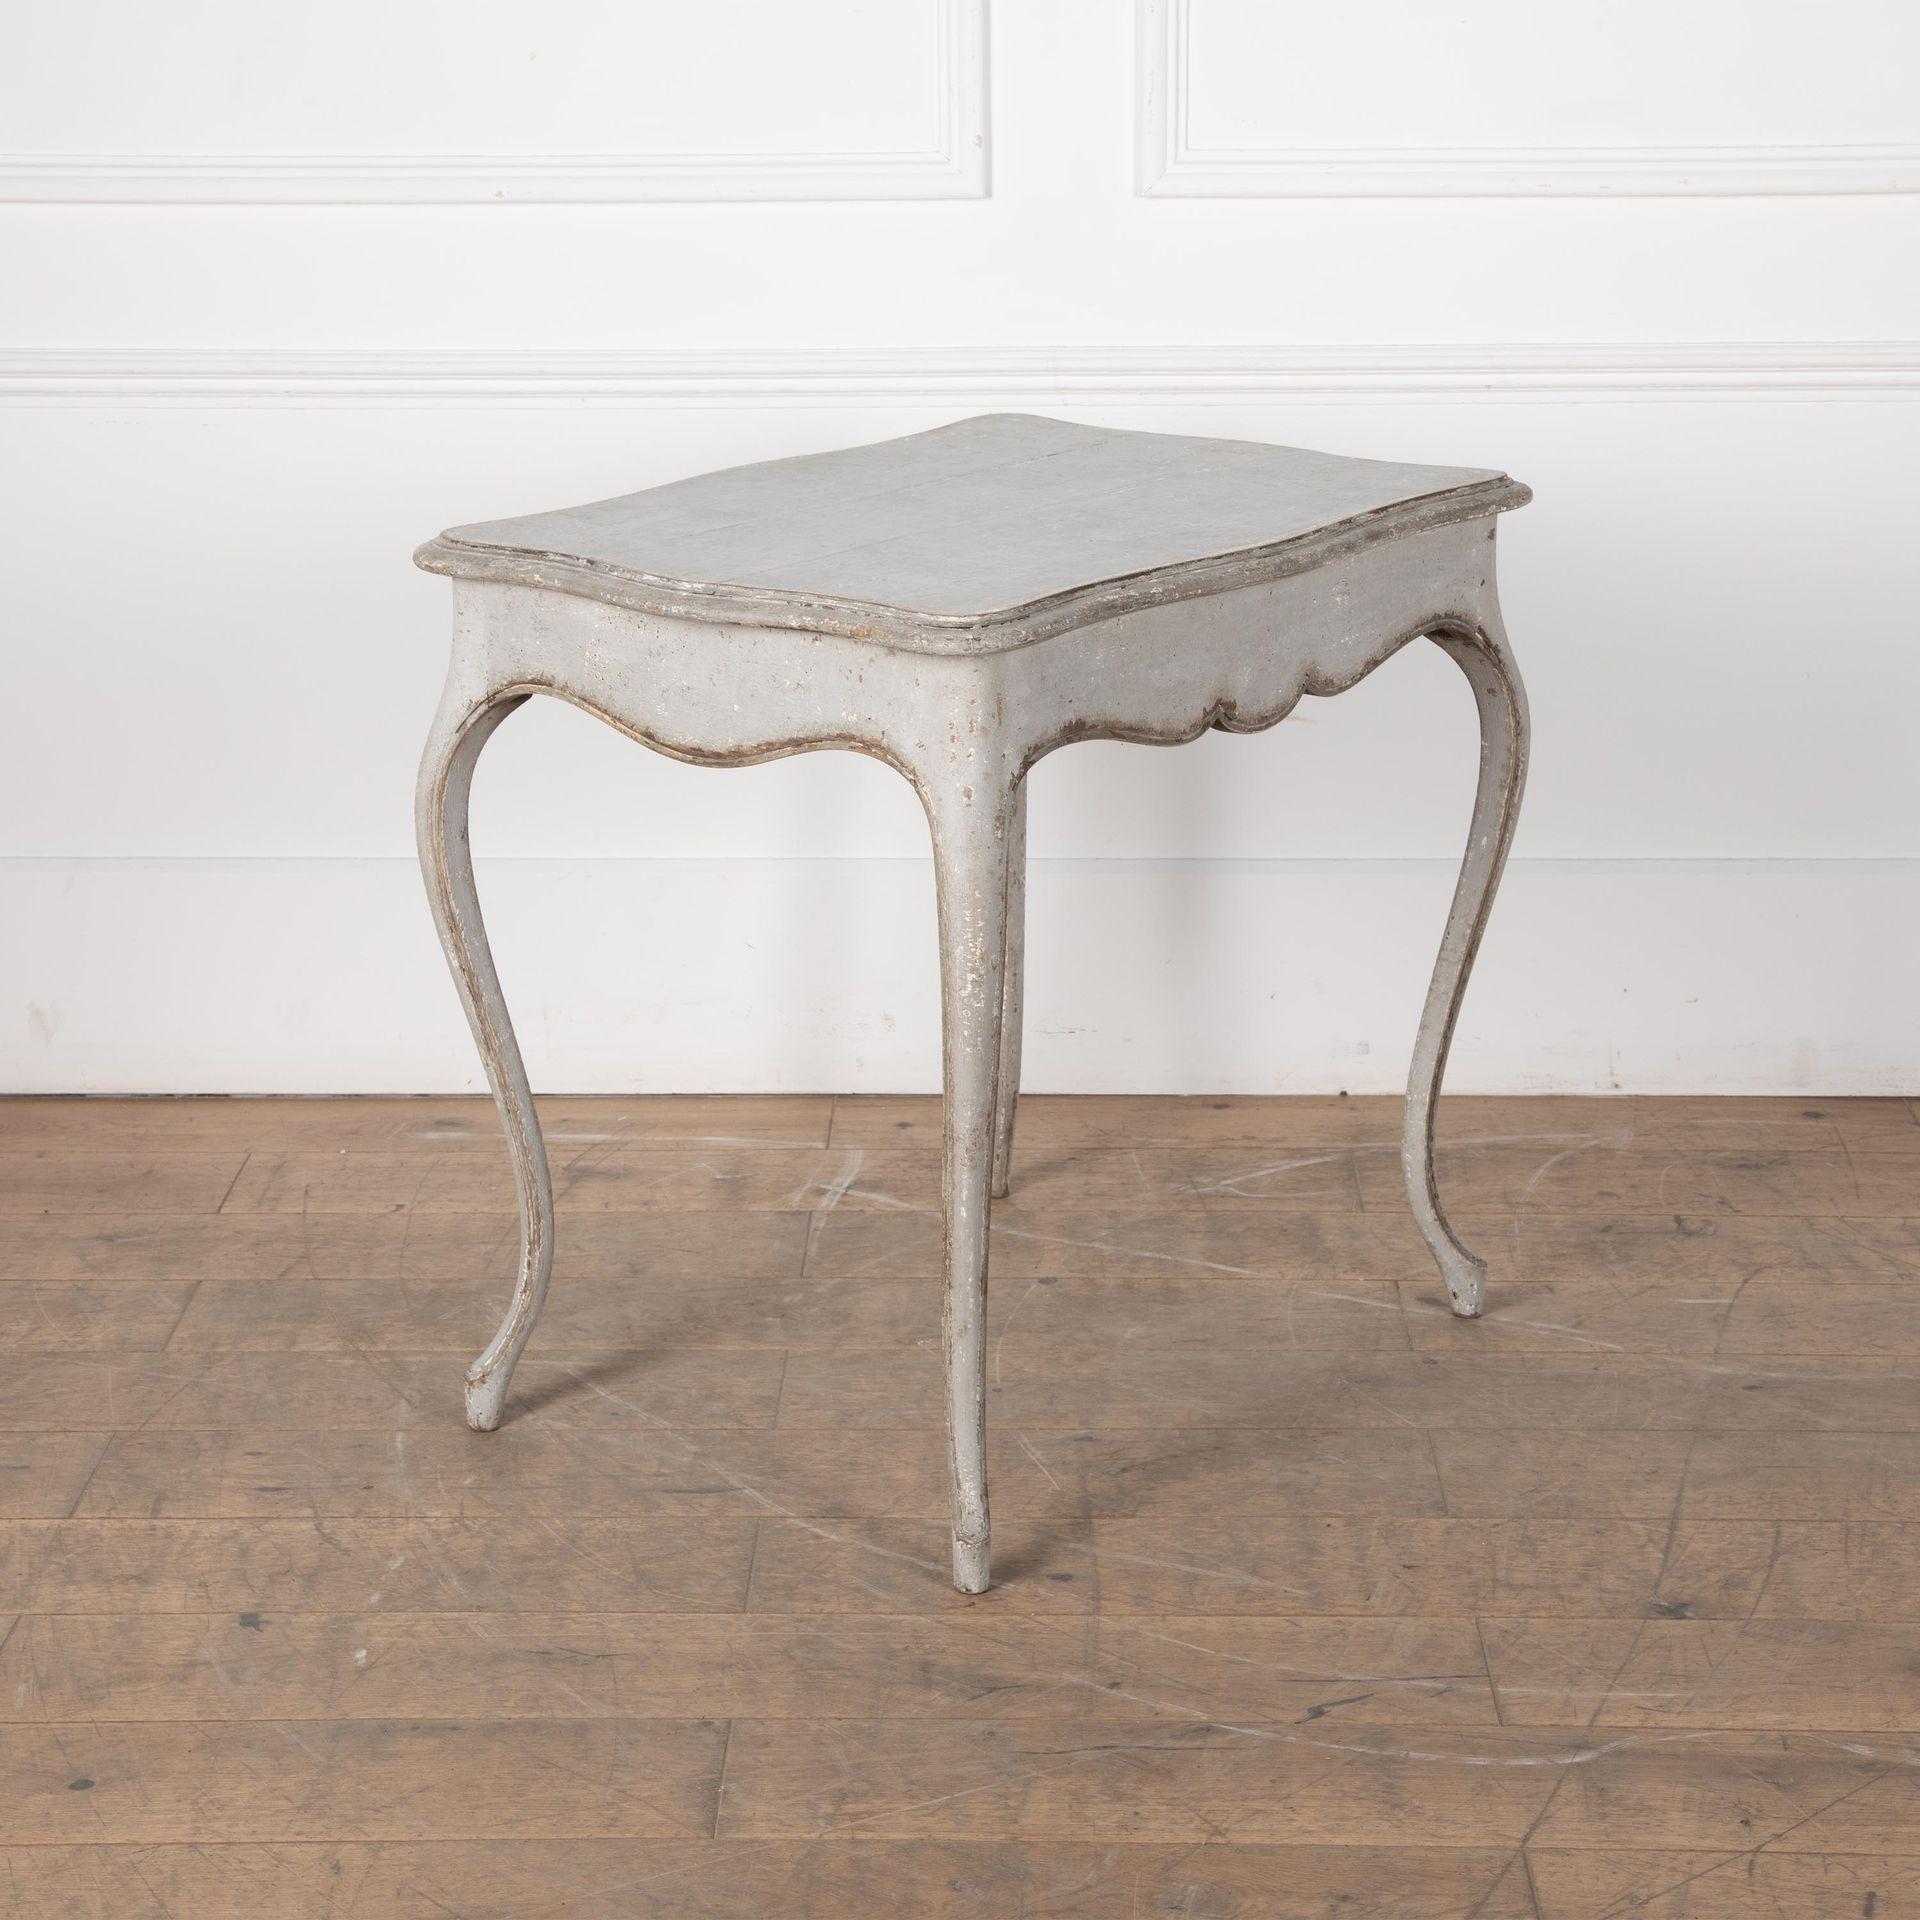 Délicieuse table d'appoint provençale de la fin du XVIIIe siècle, reposant sur des pieds en cabriole, avec un plateau et un tablier festonnés.